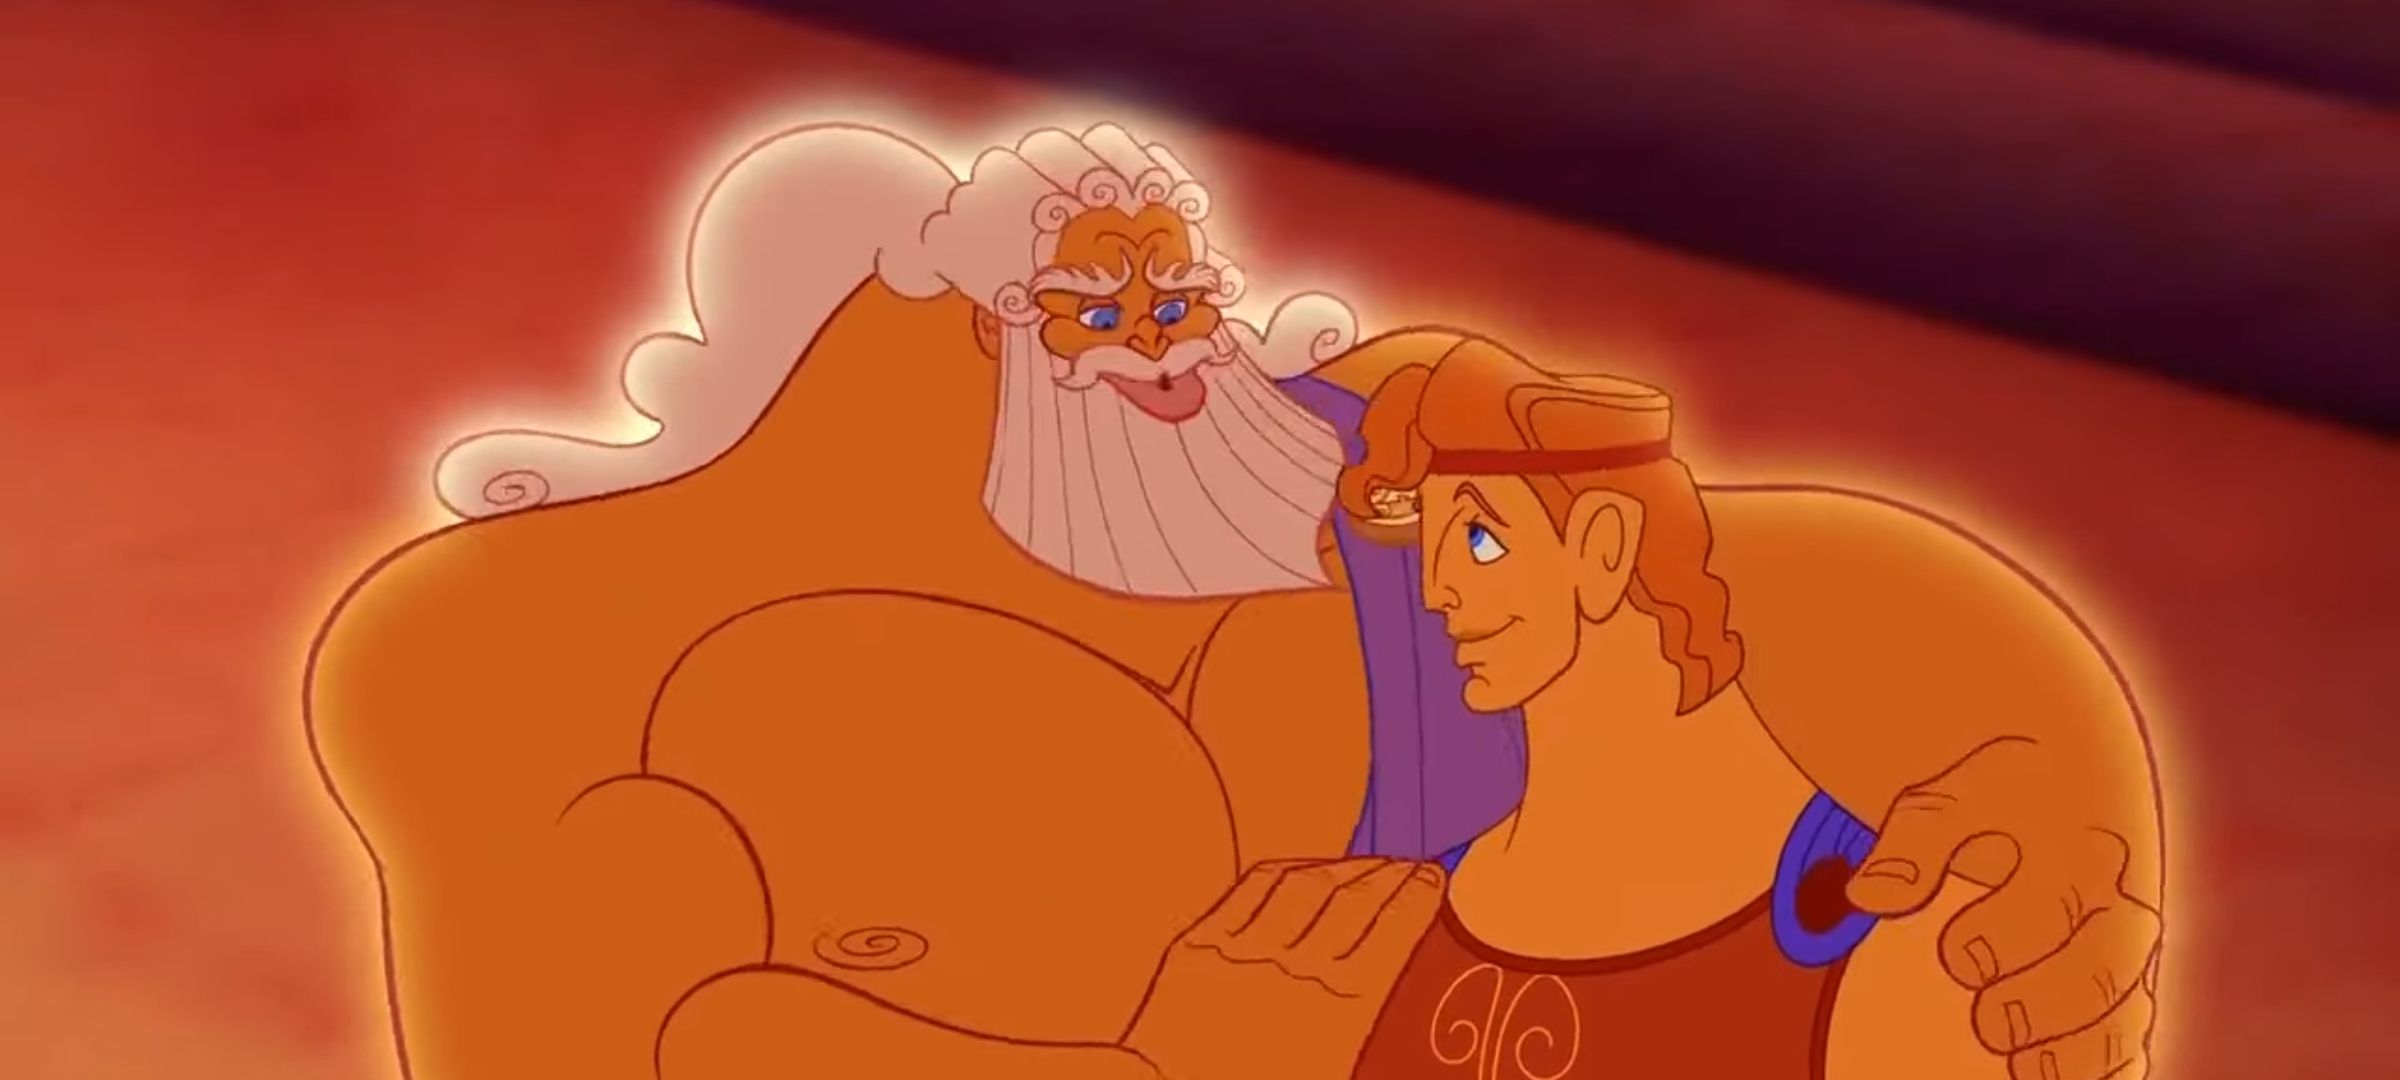 Film Animasi 'Hercules' akan Dibuat Versi Live Action, ini Faktanya!